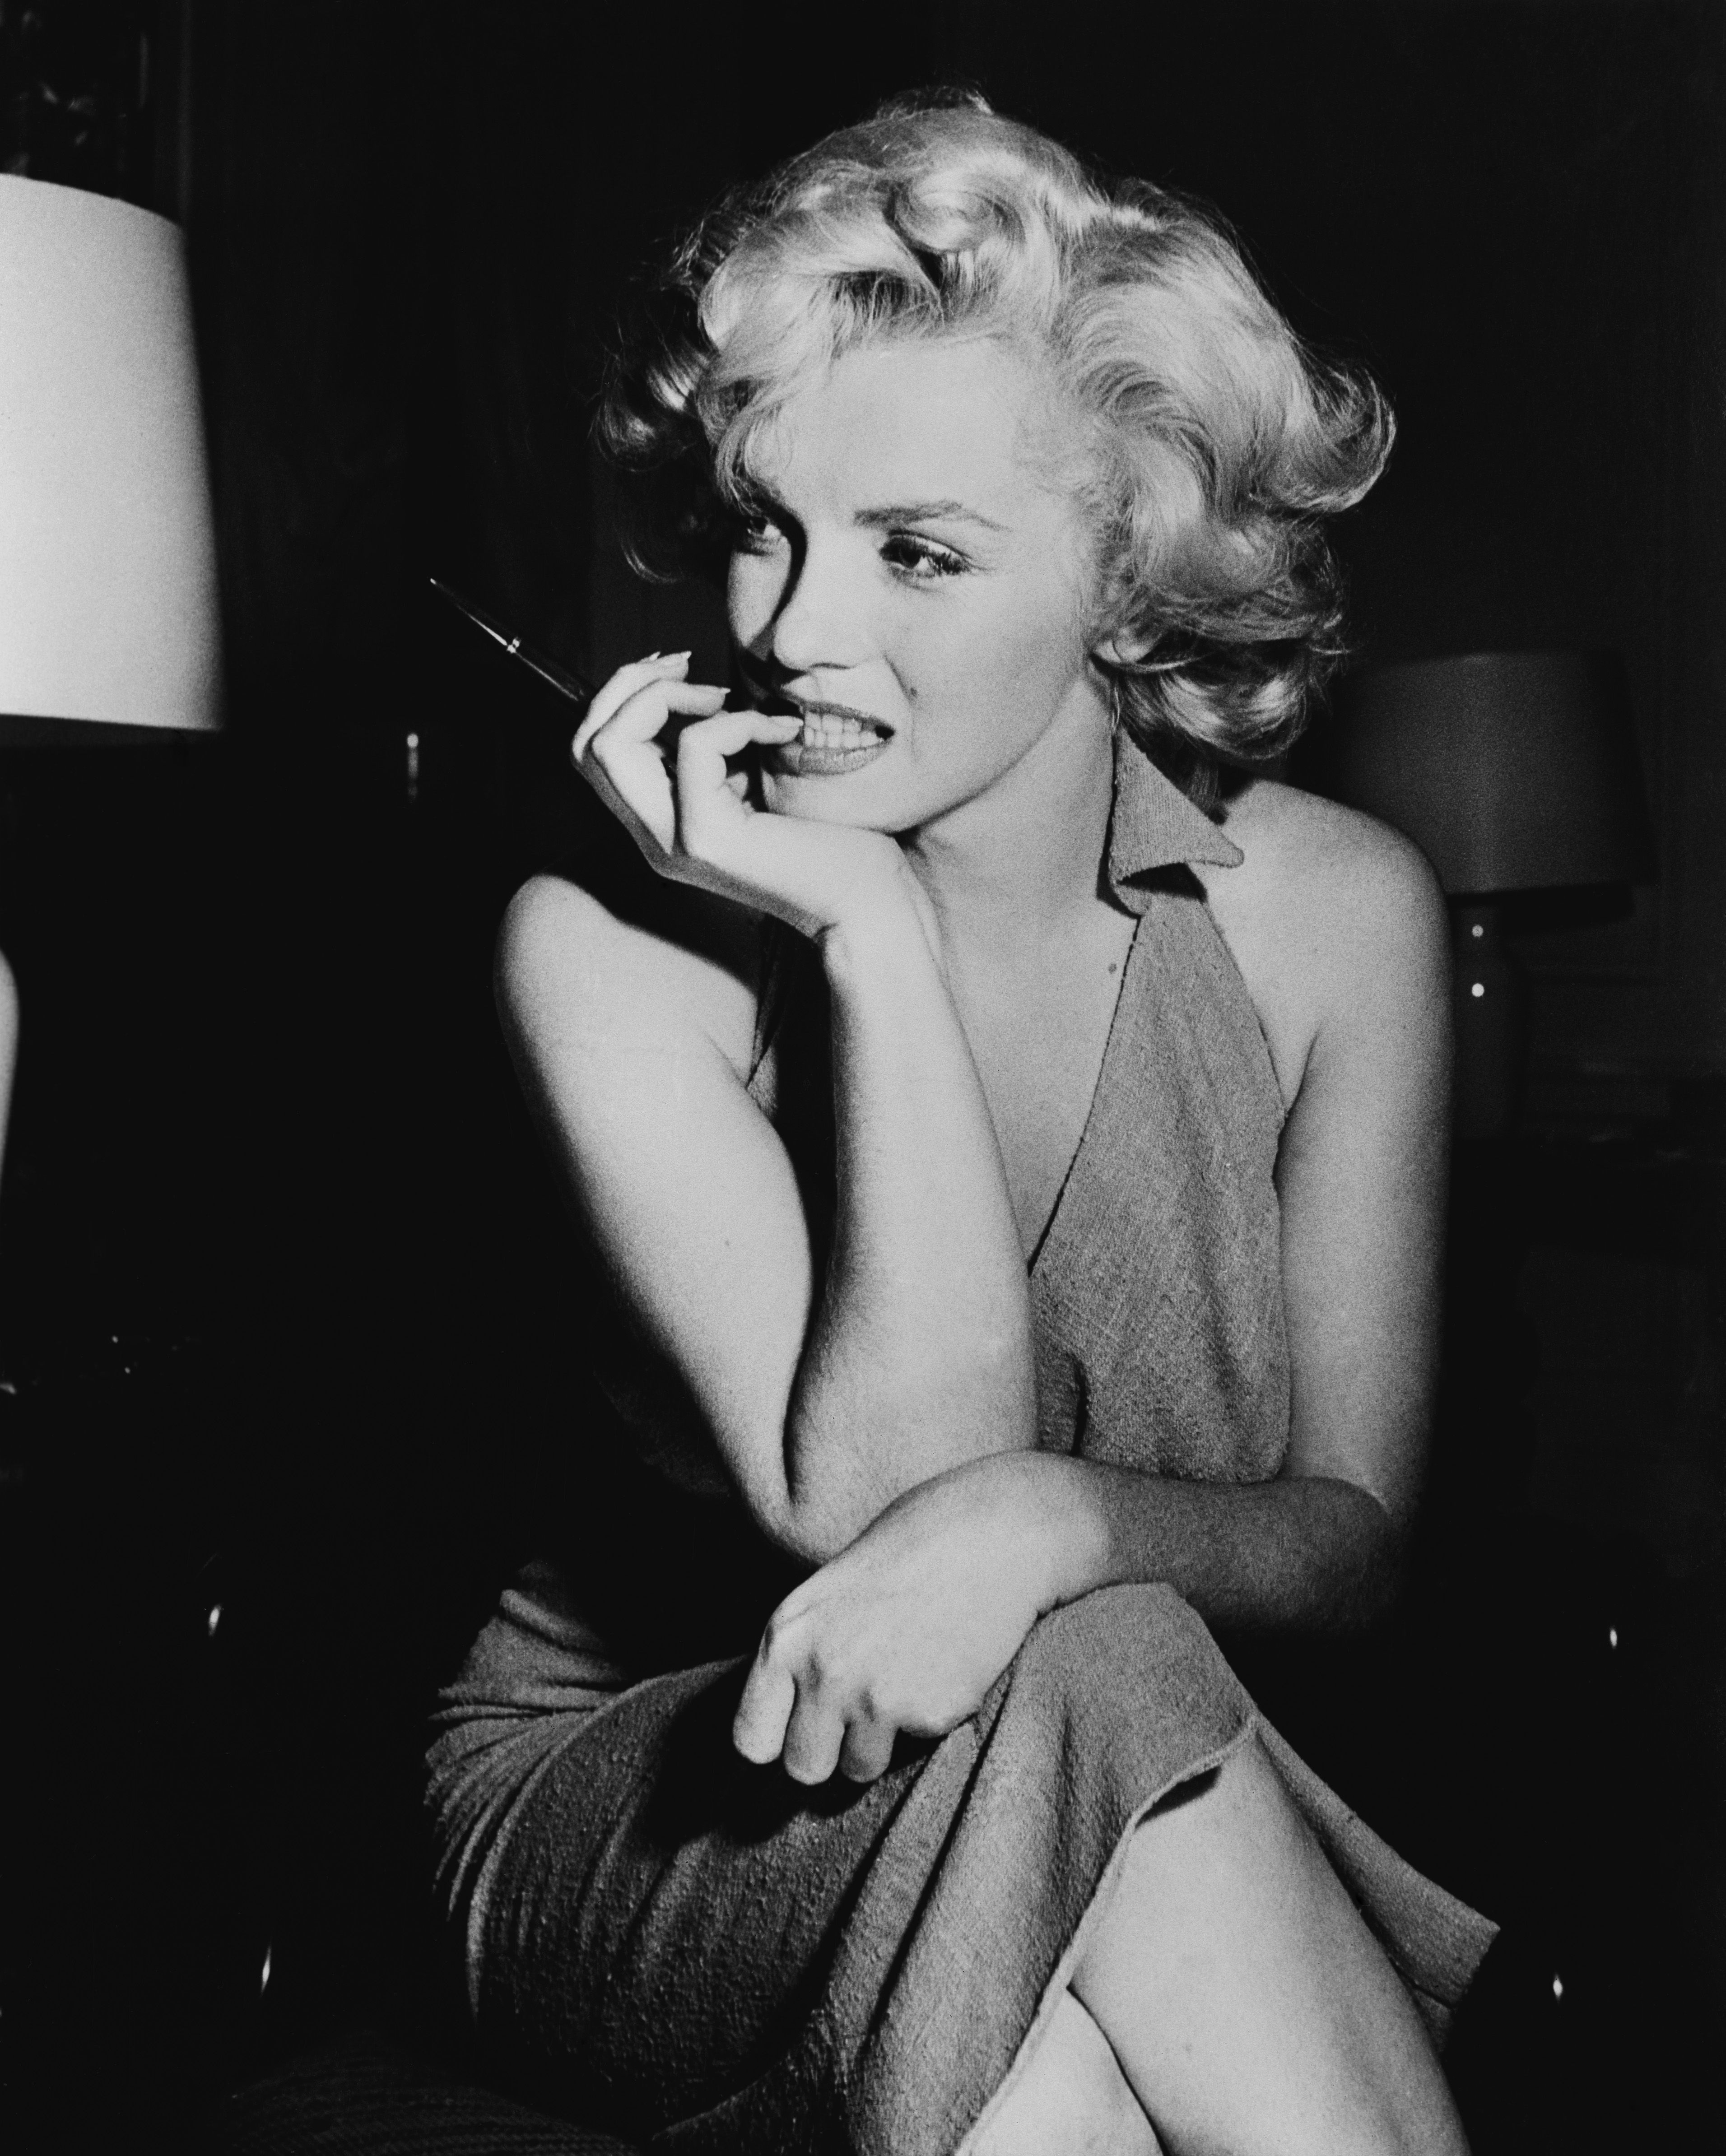 The explosive real story behind Marilyn Monroe film Blonde image